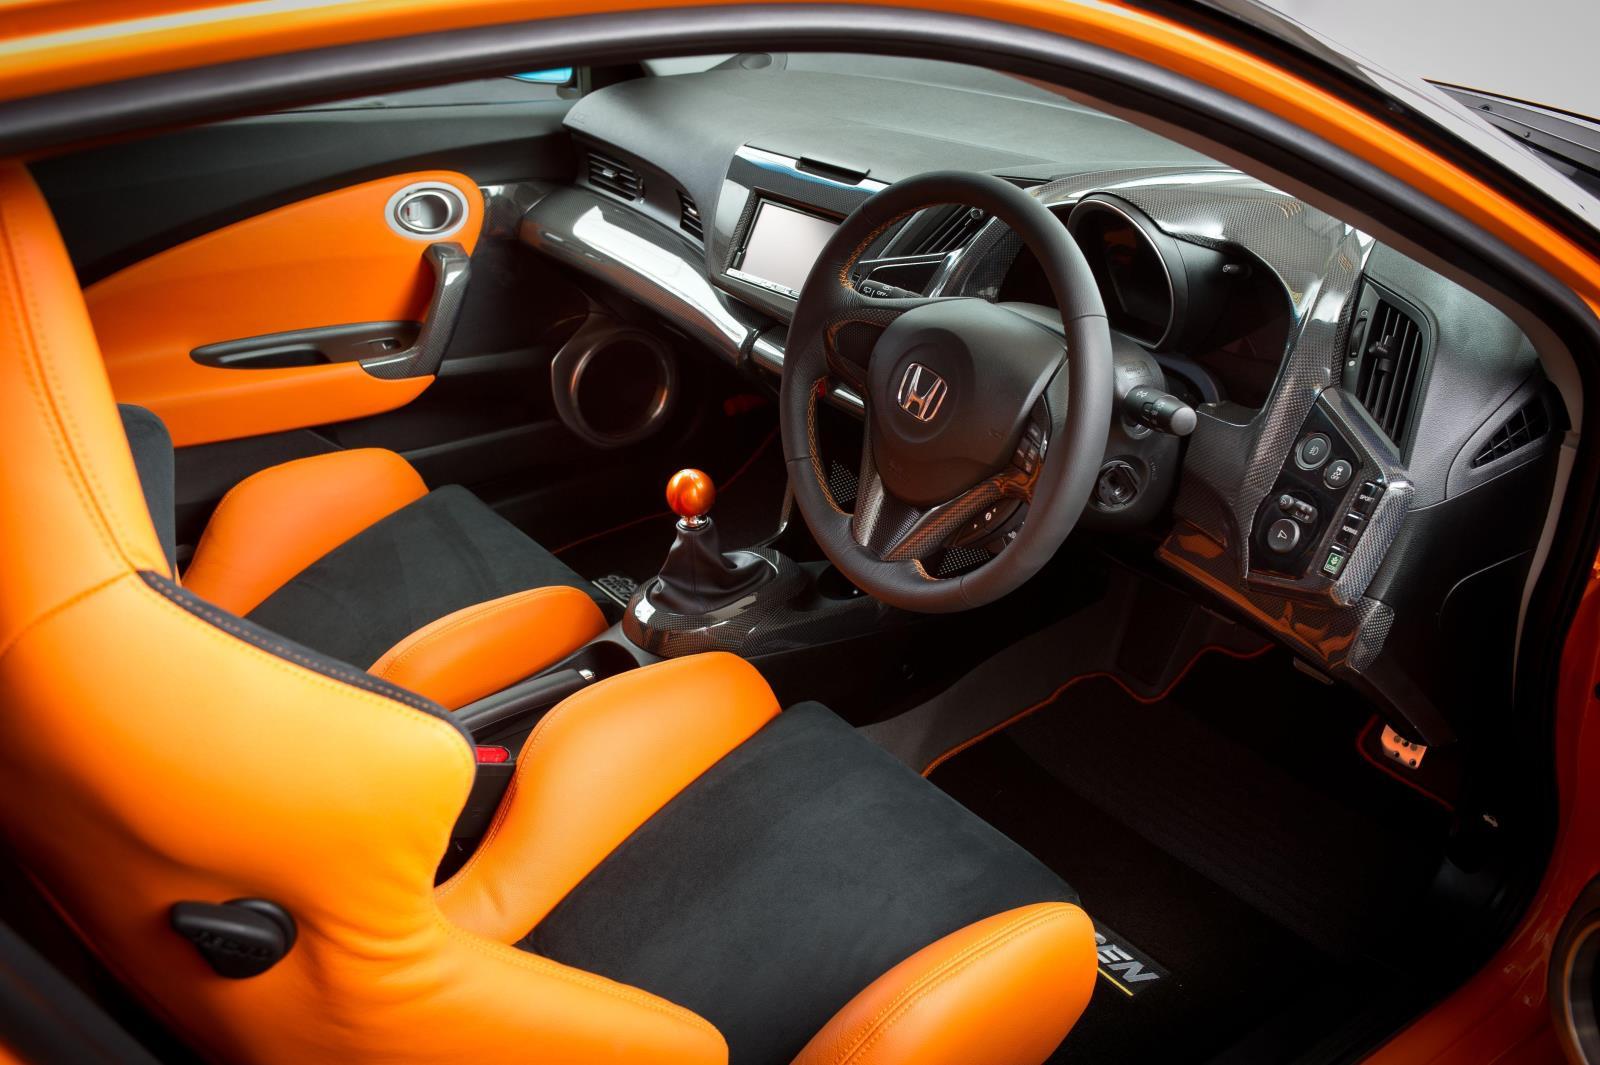 Interiorul lui Honda CR-Z Mugen RR beneficiaza de un colorit orange si insertii cu look carbon